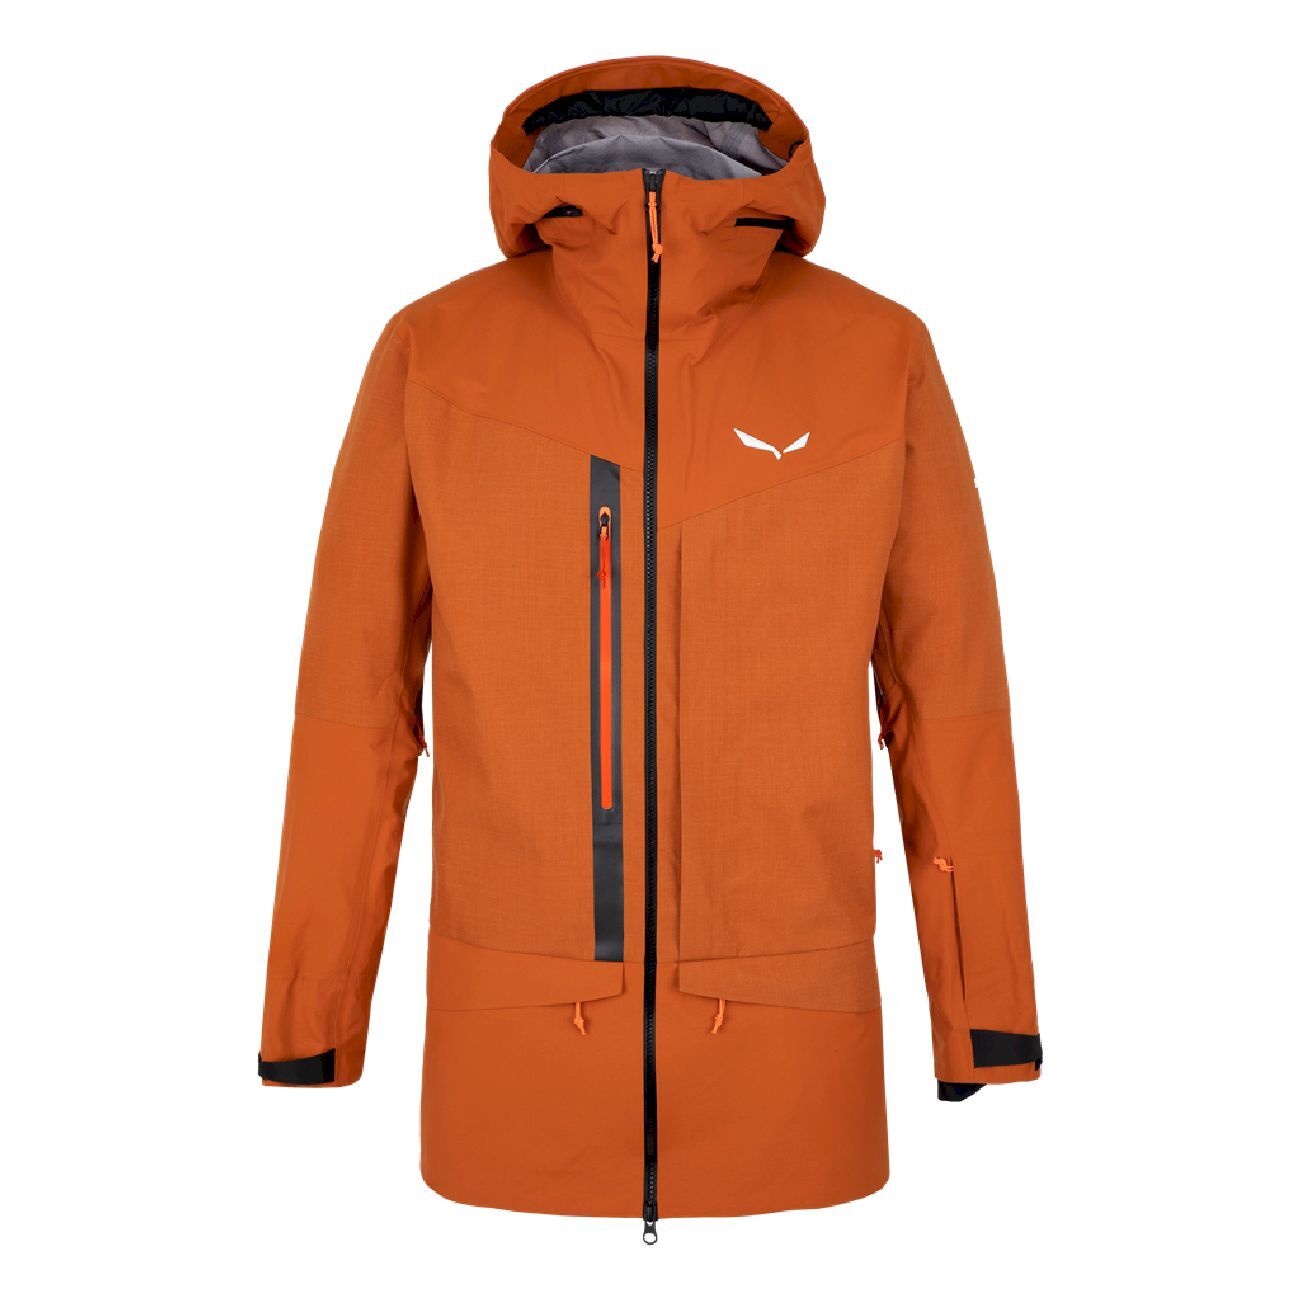 Salewa Sella 3L PTXR Jacket - Ski jacket - Men's